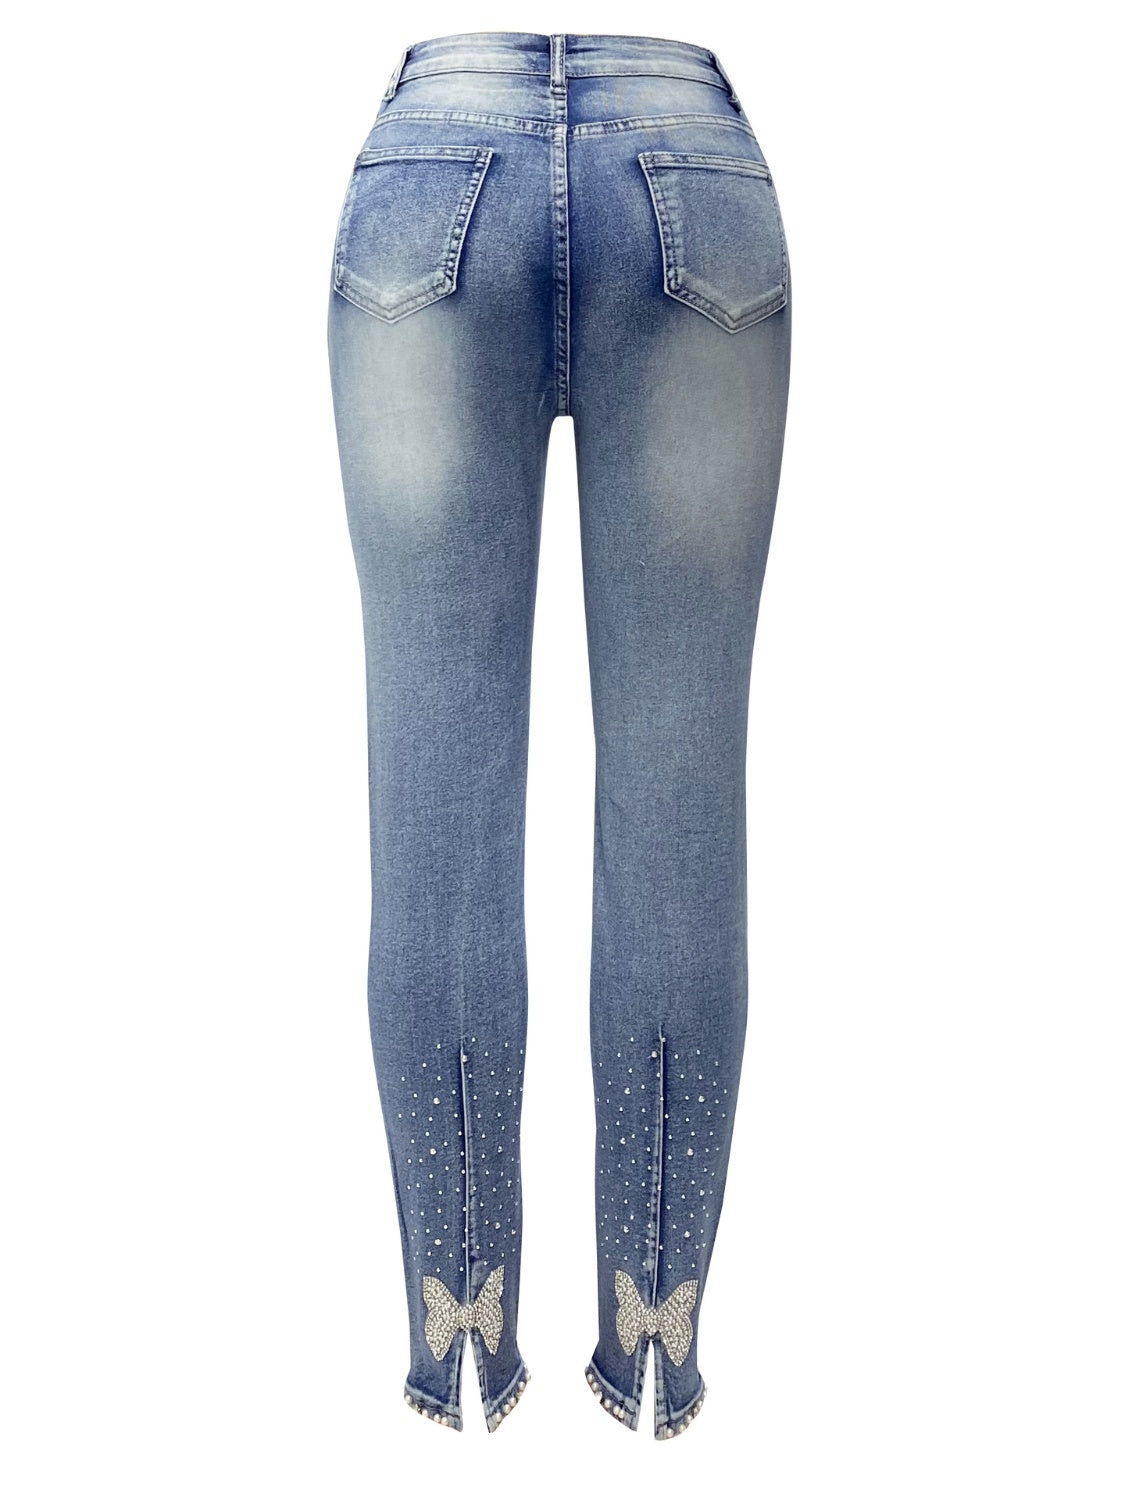 Rhinestone Skinny Jeans with Pockets - Thandynie